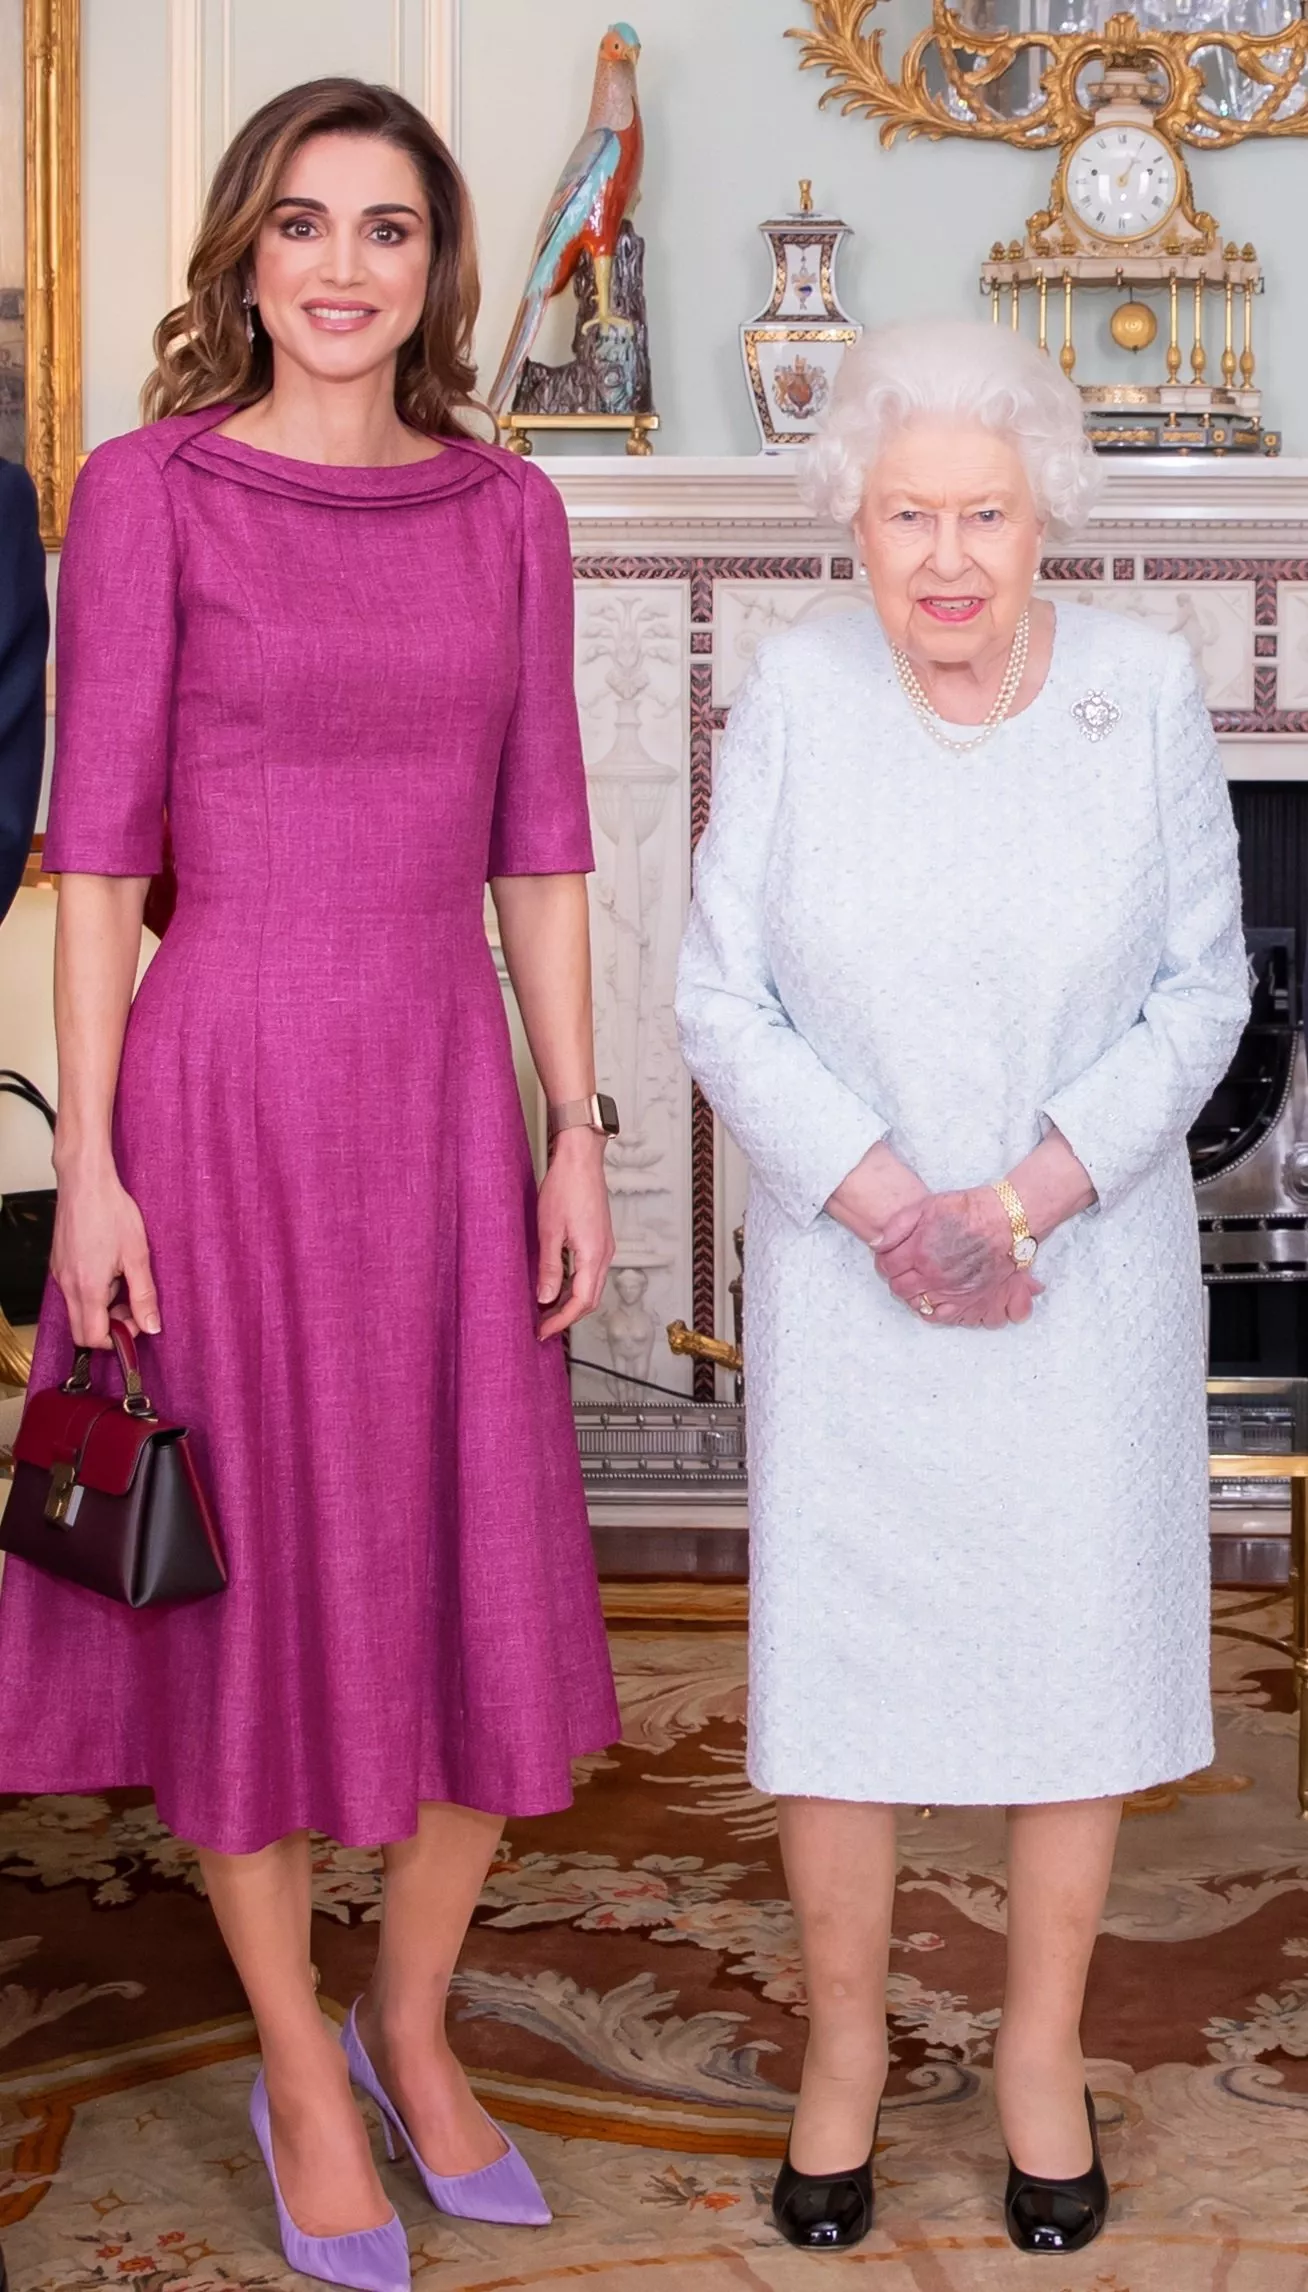 الملكة رانيا في قصر باكنغهام: إطلالة مفعمة بالأنوثة!